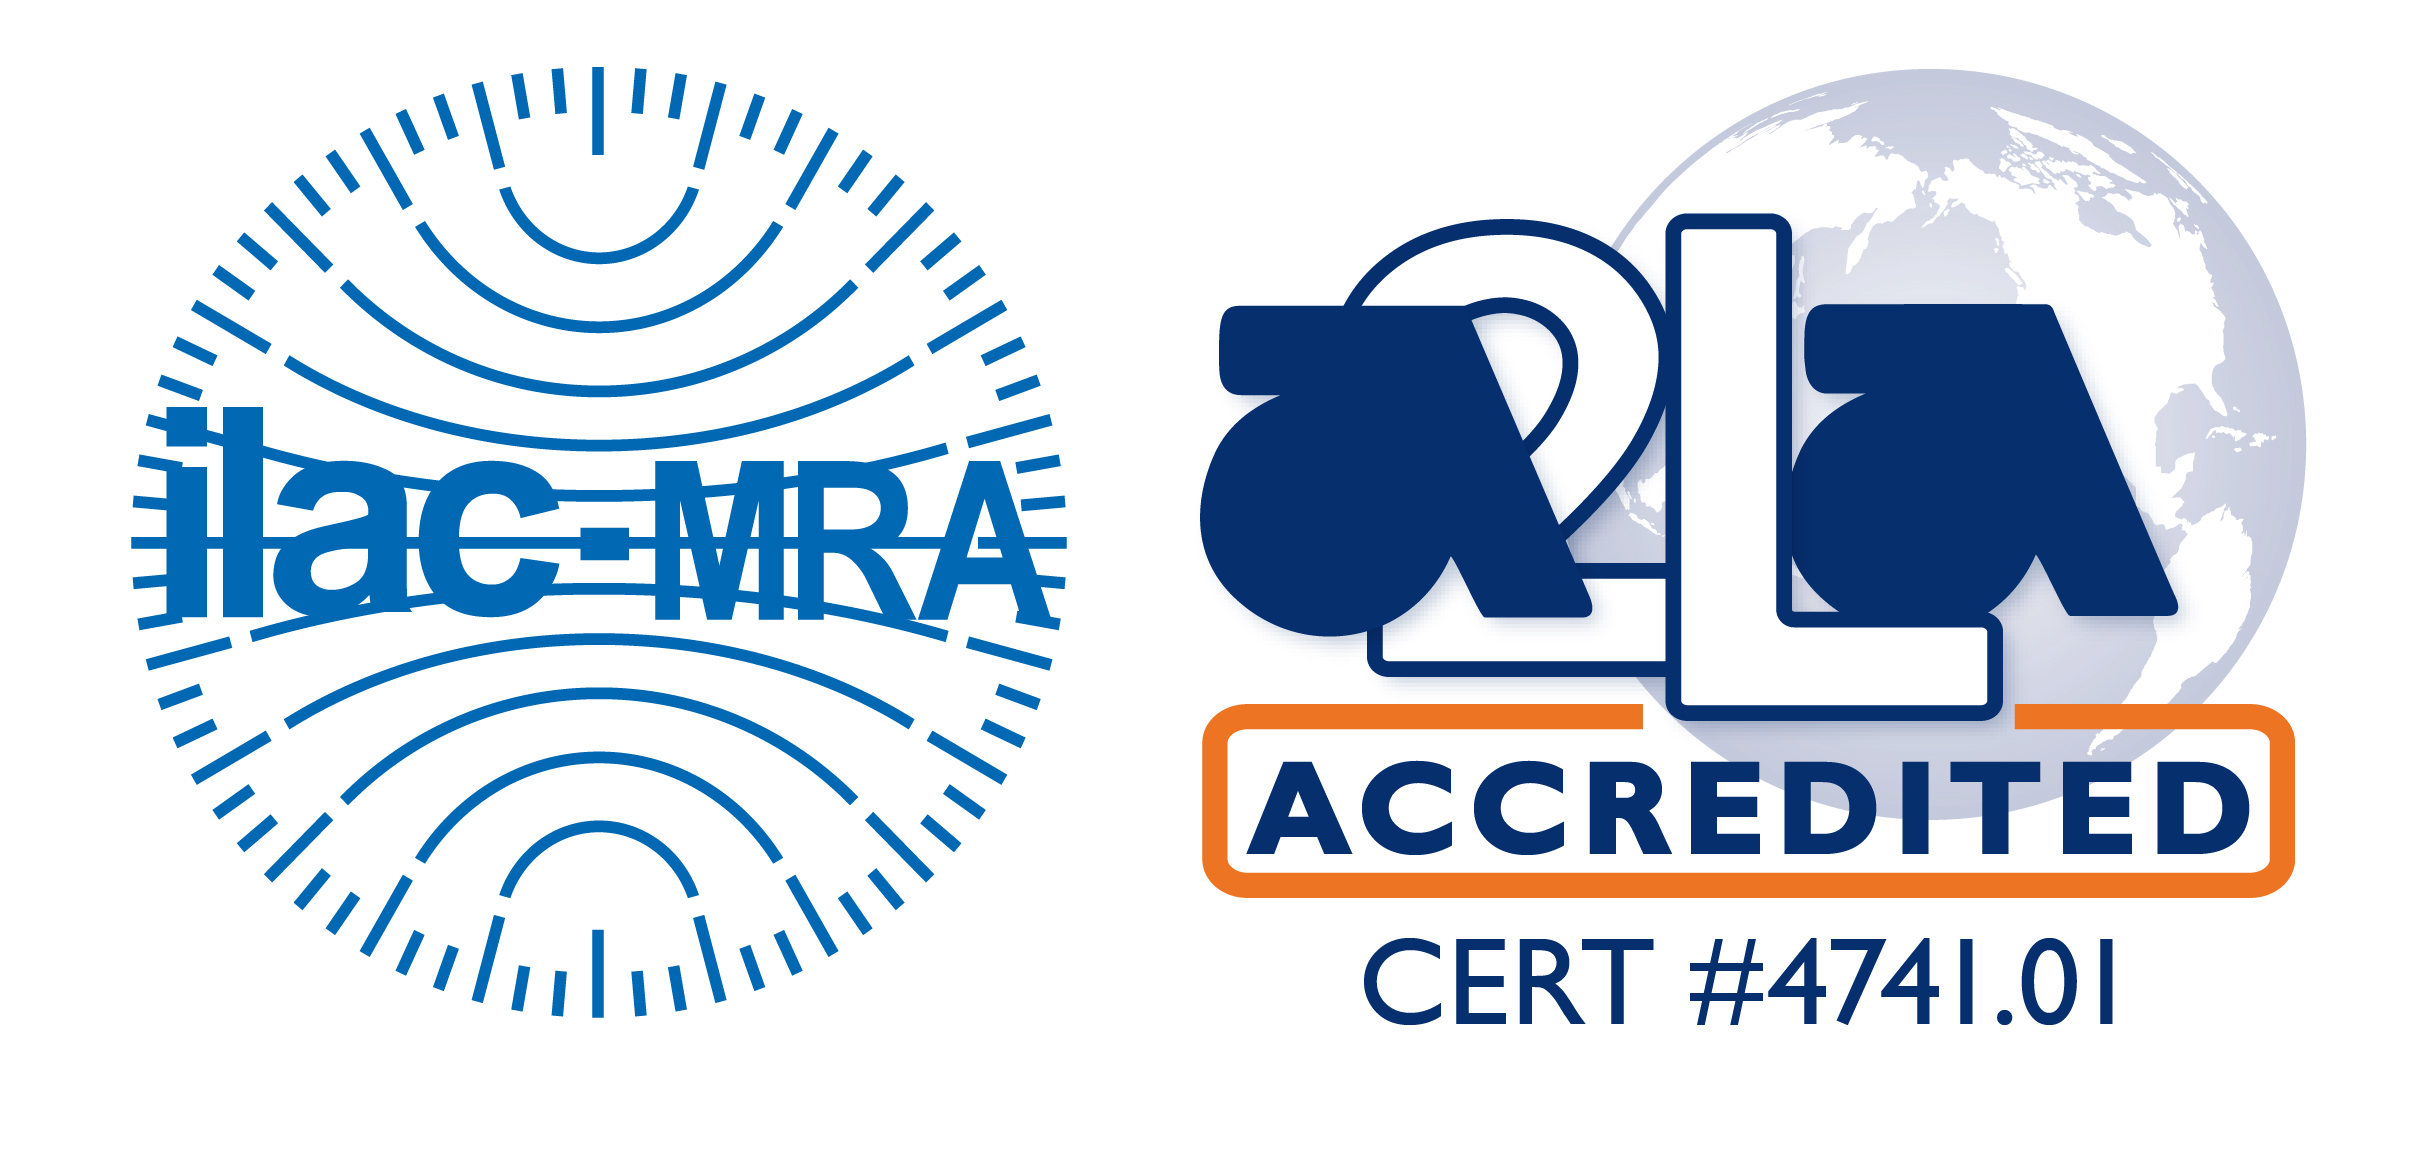 ILAC MRA-A2LA Accredited